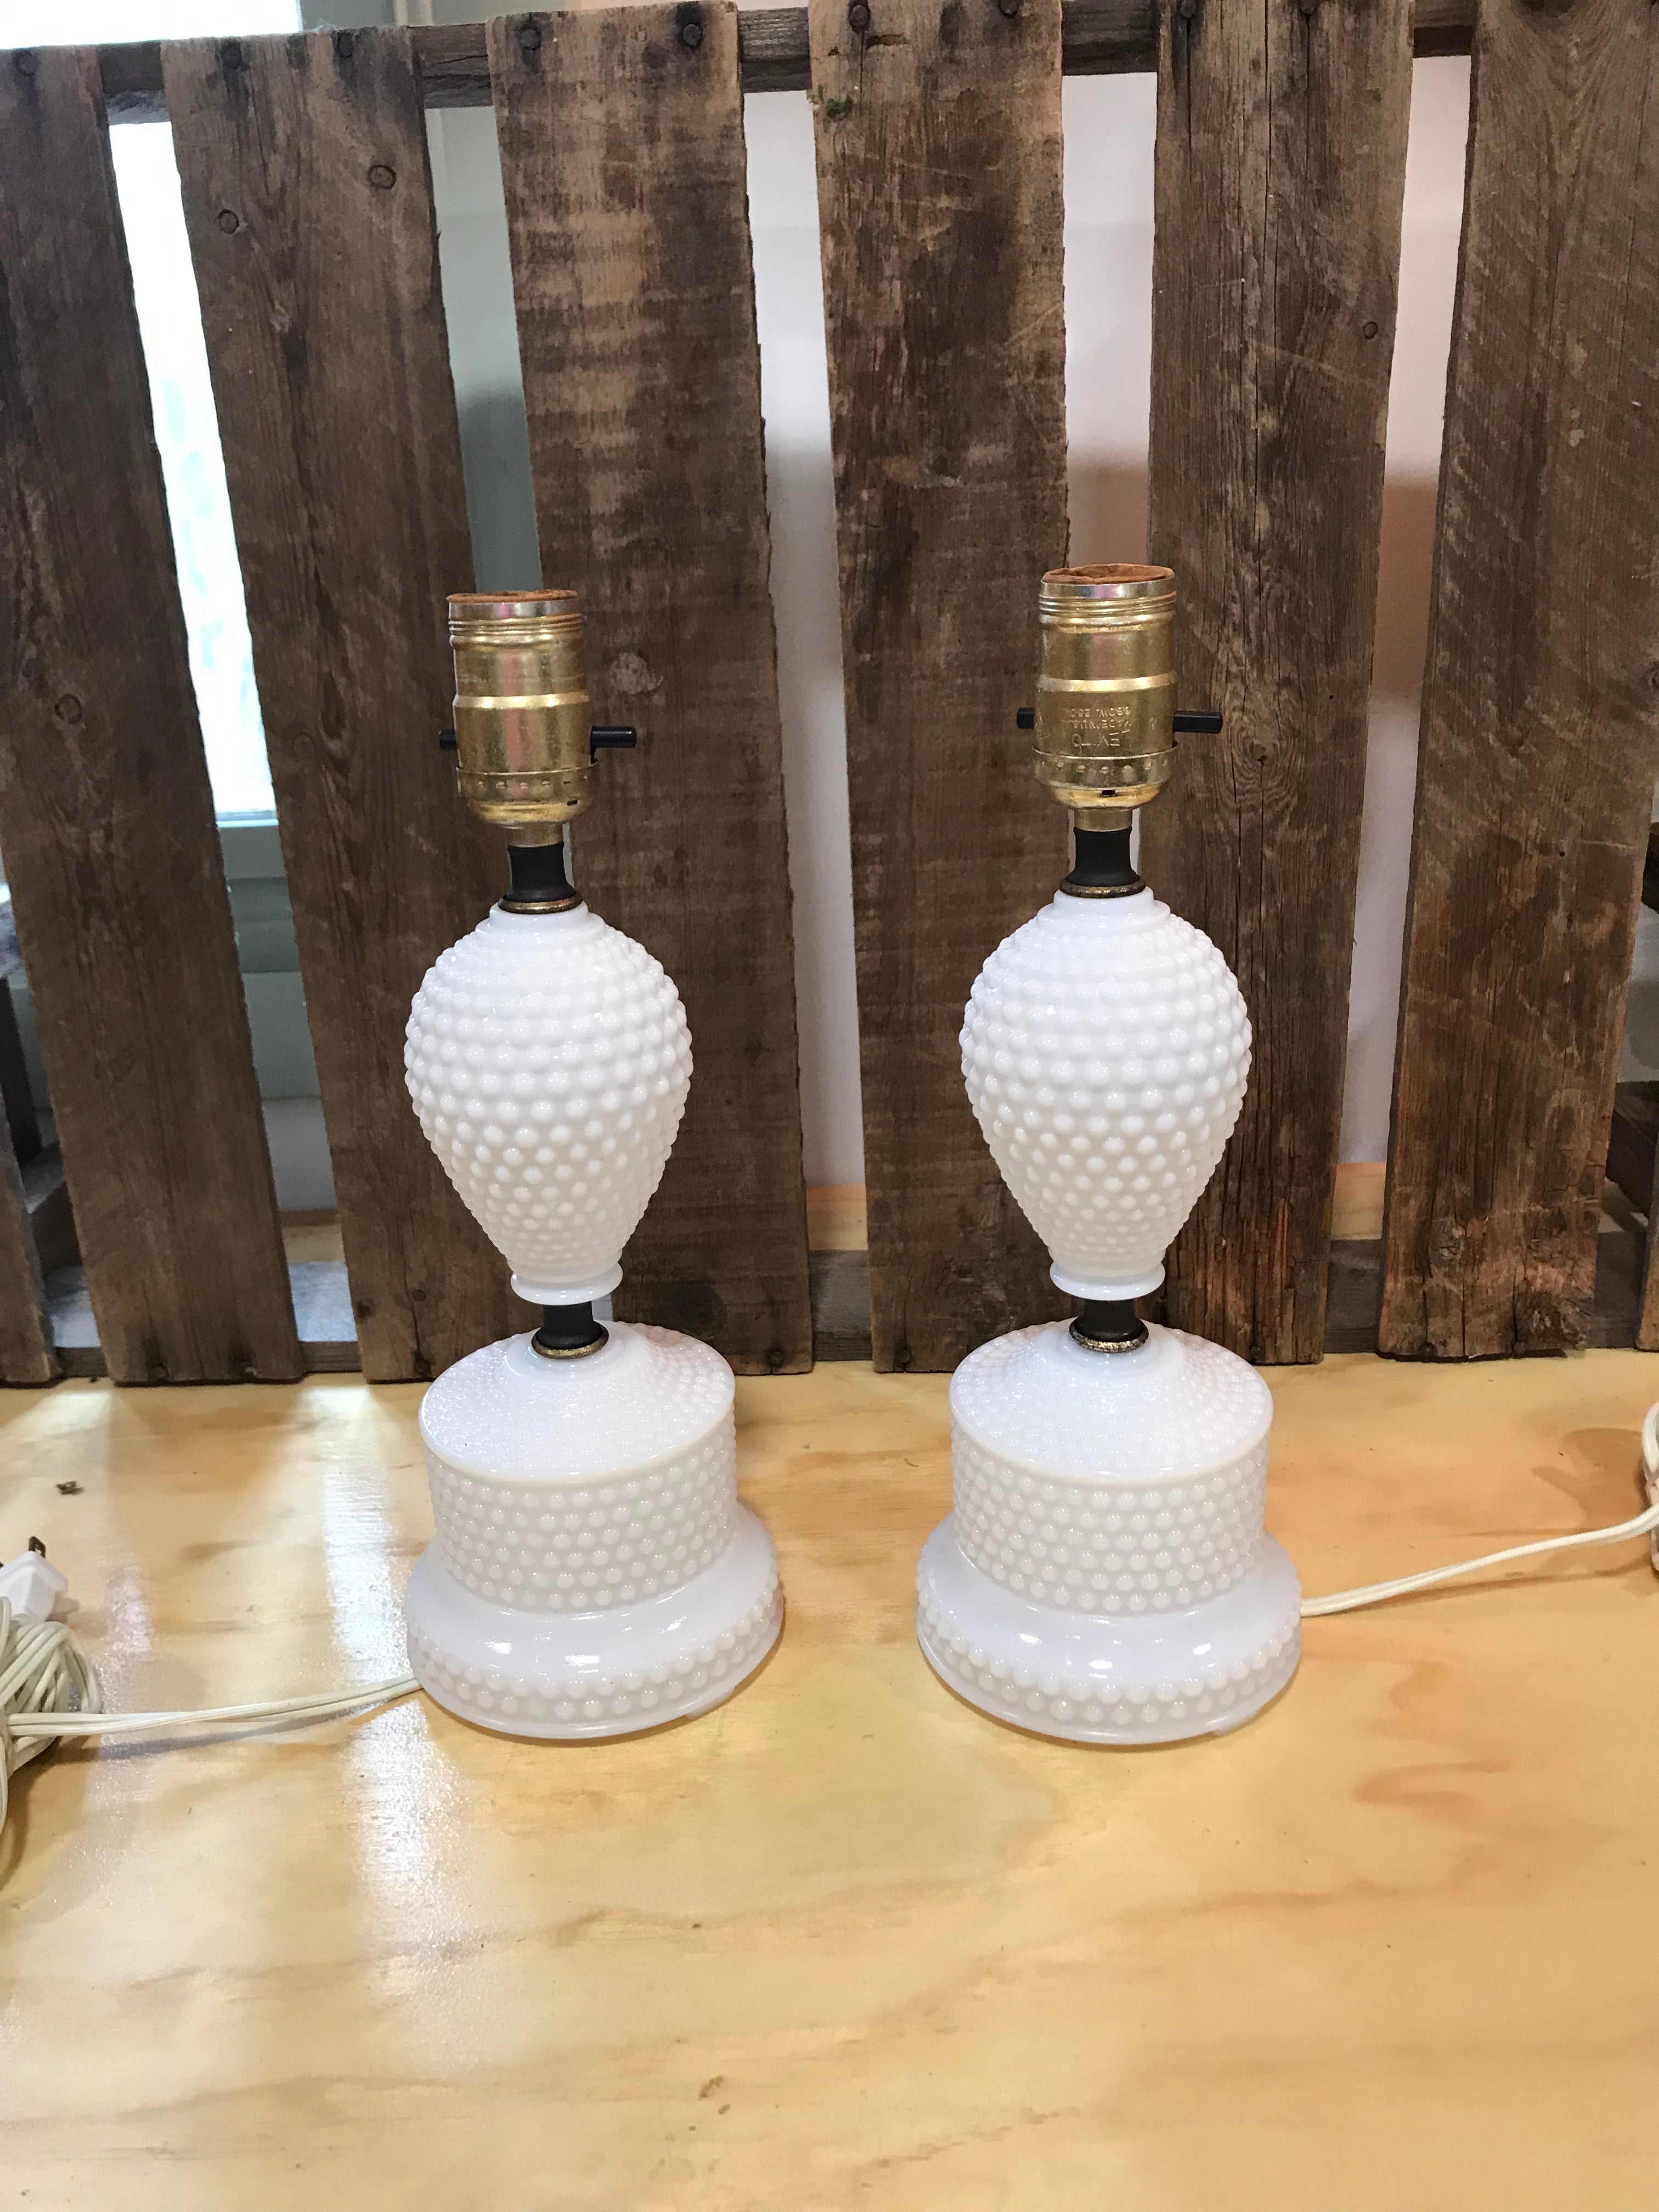 Vintage Milk Glass Hobnail Lamp